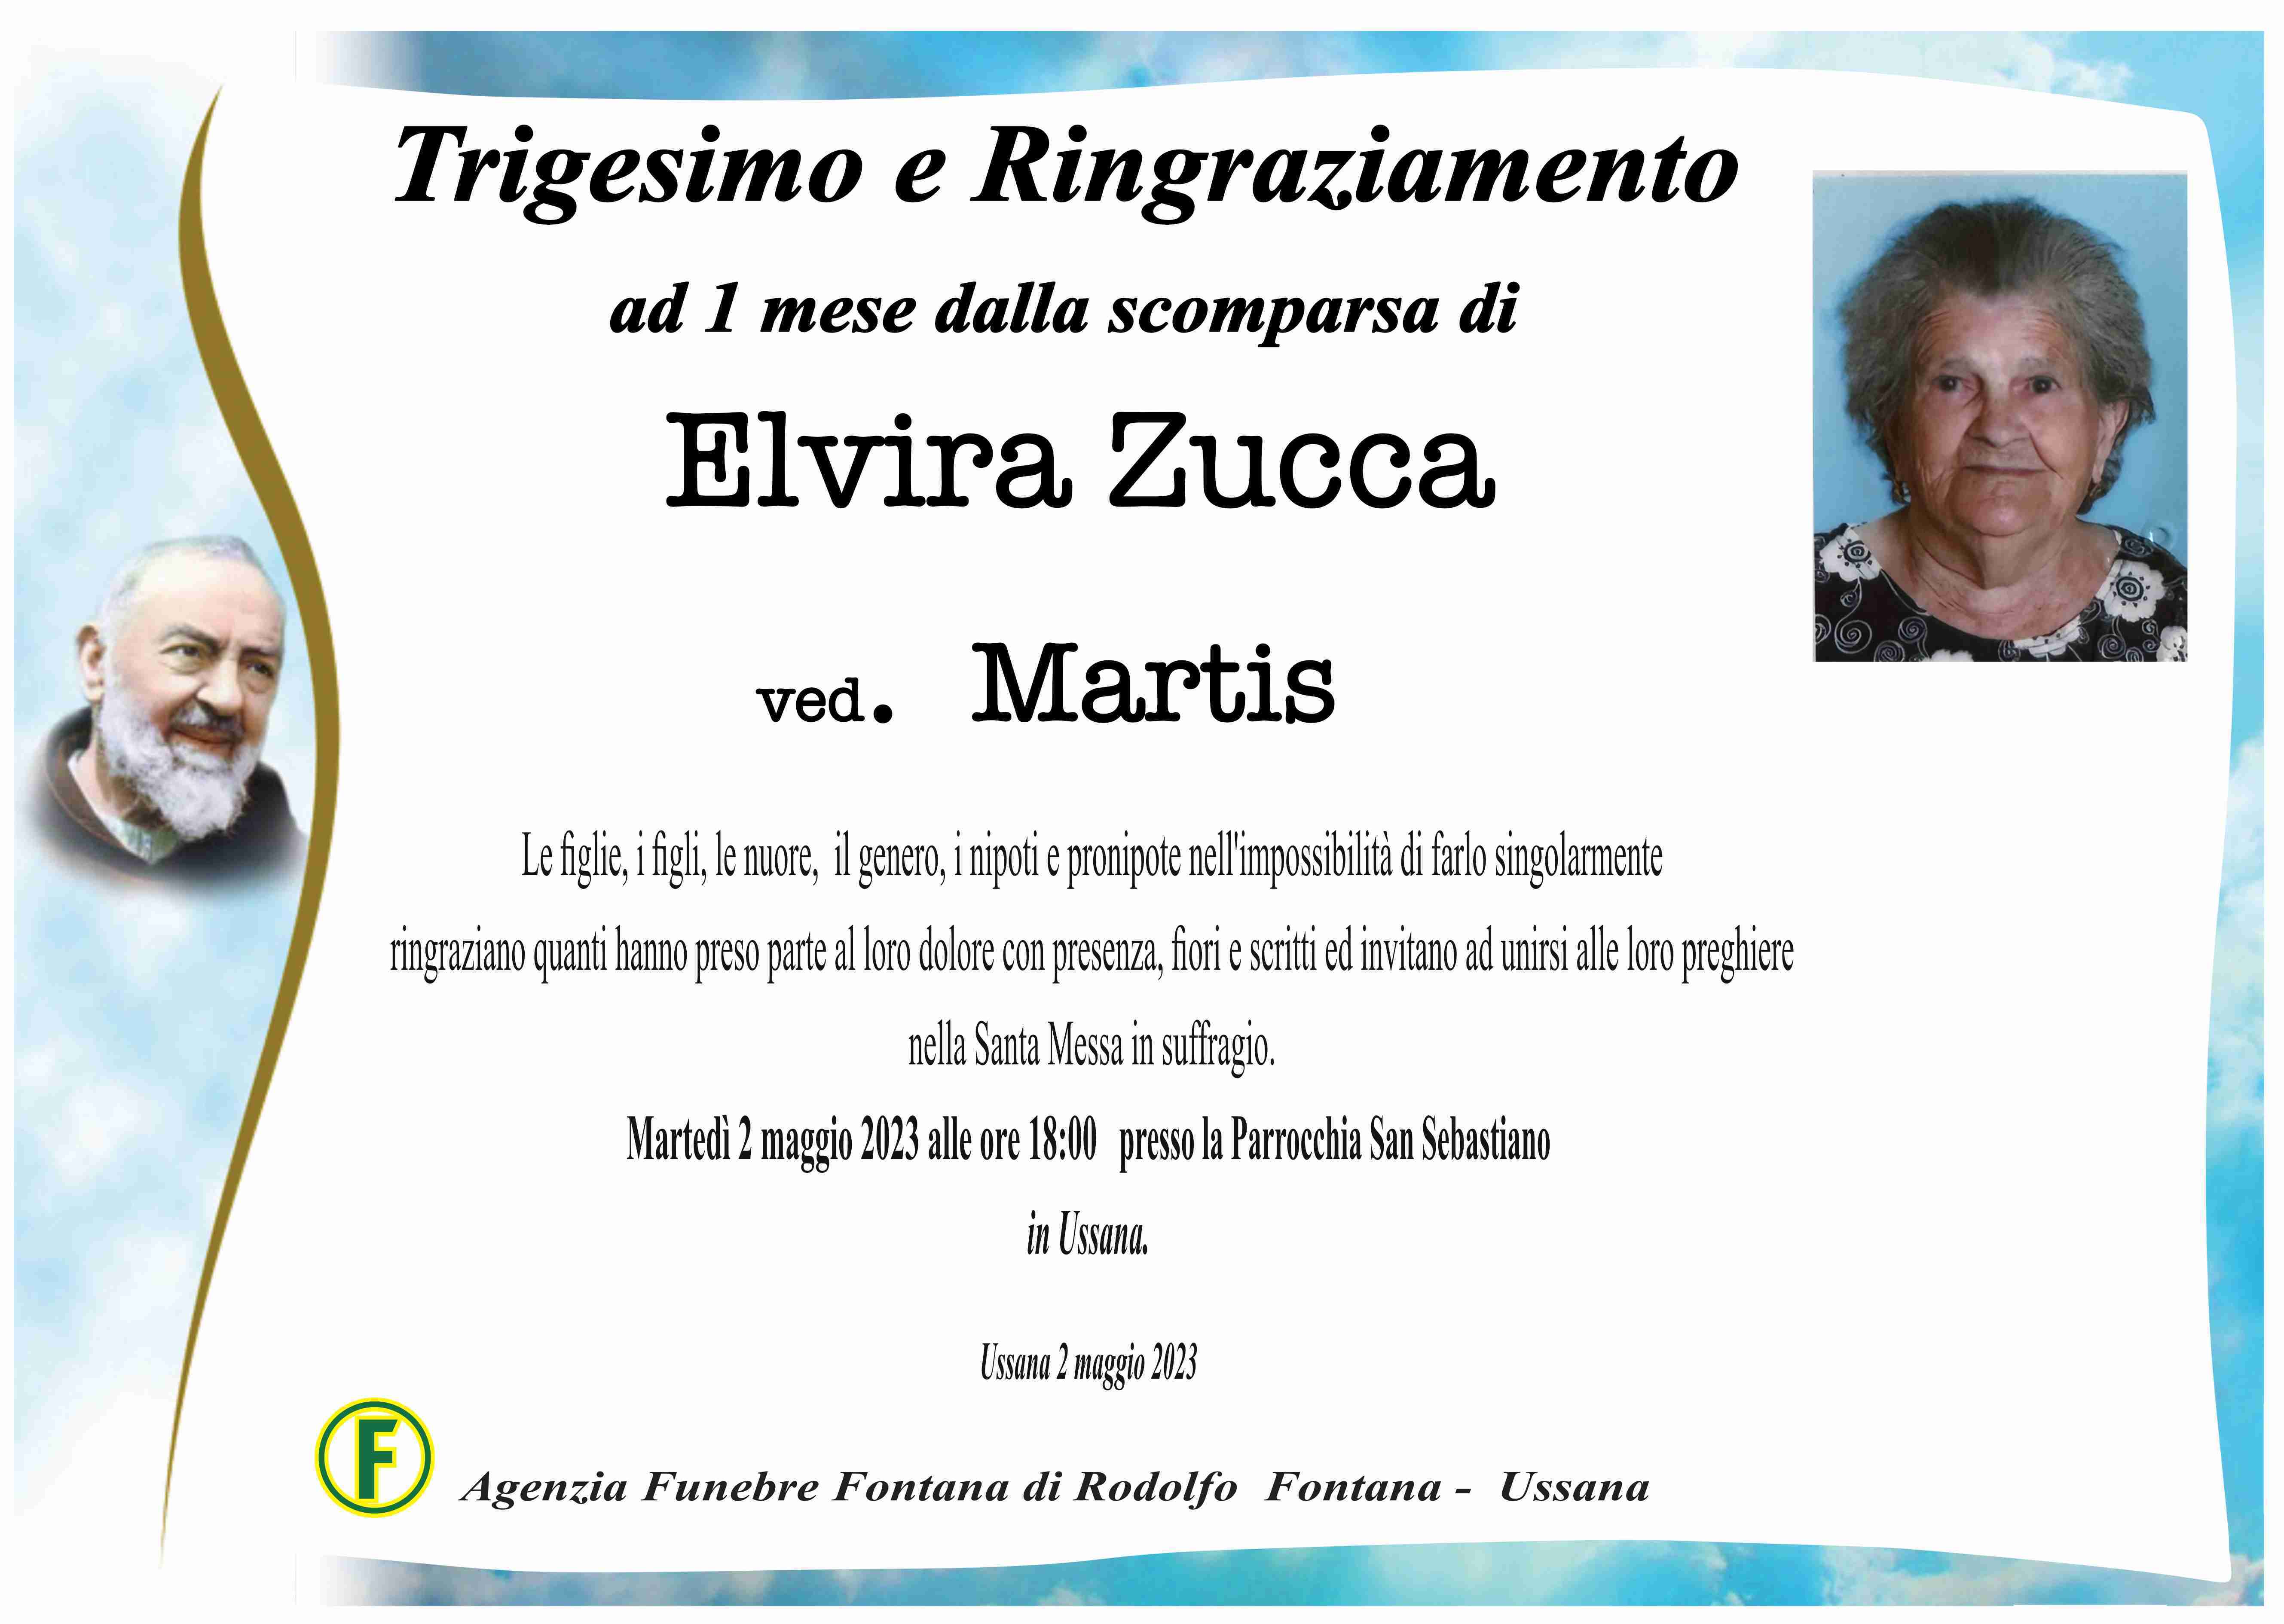 Elvira Zucca